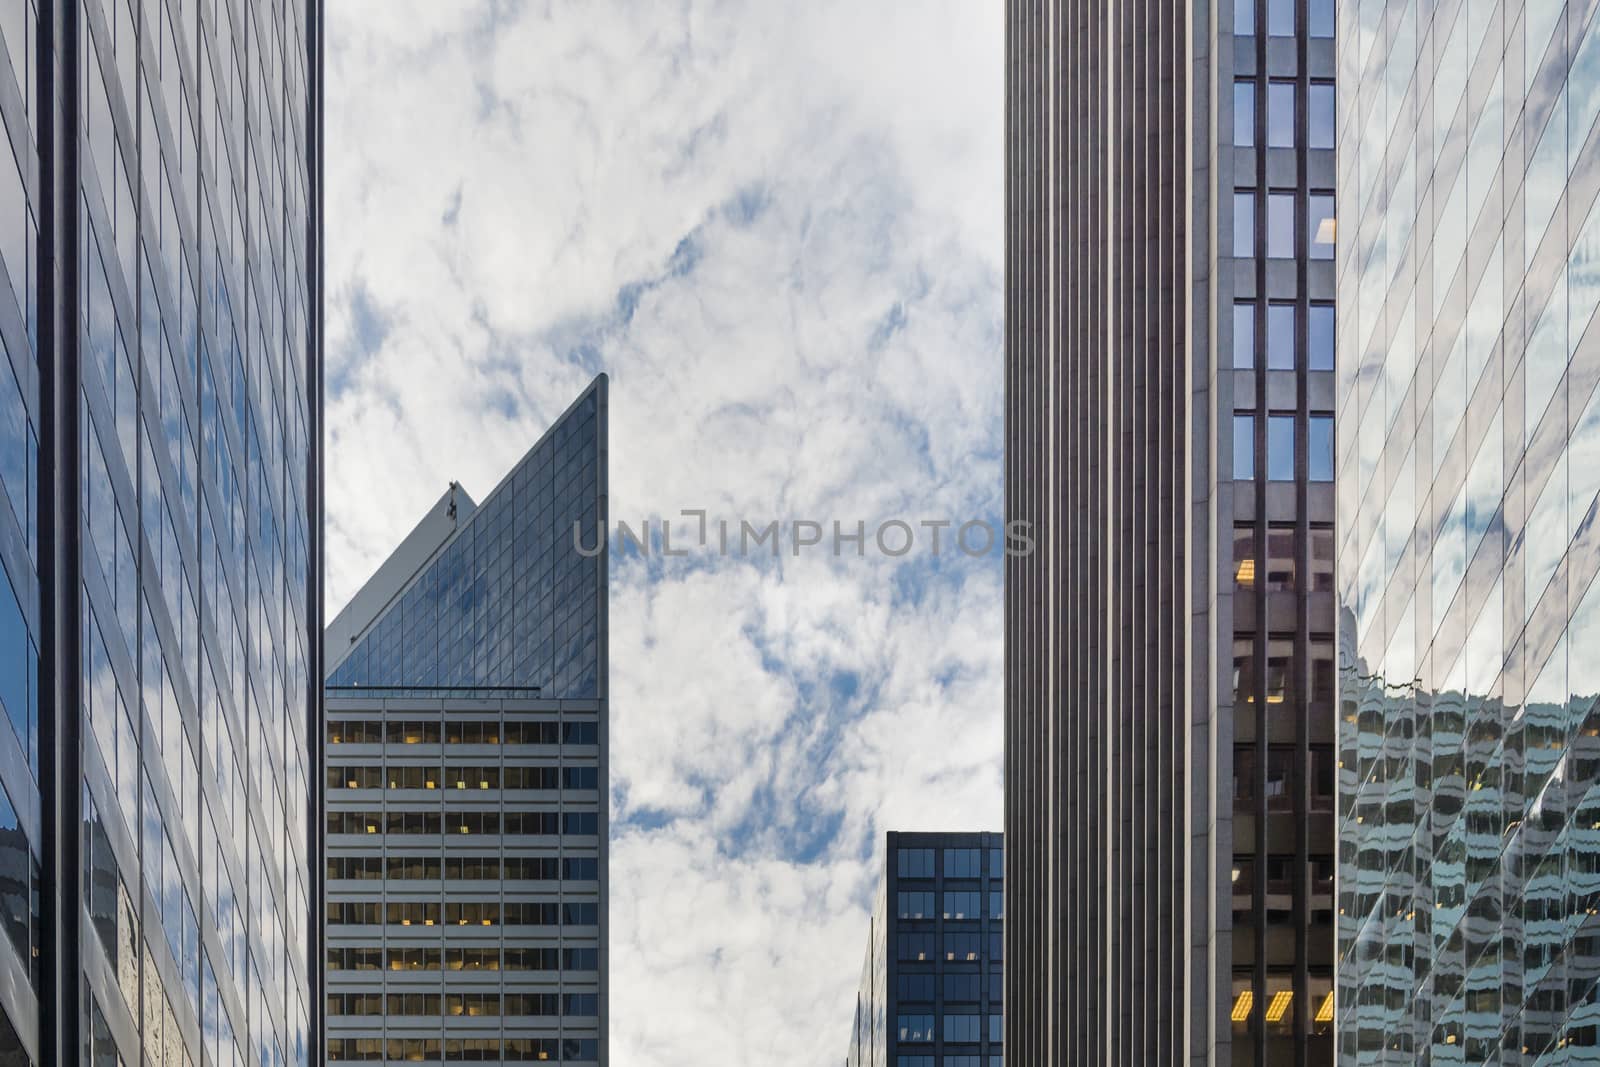 Chicago downtown skyscrapers by rarrarorro